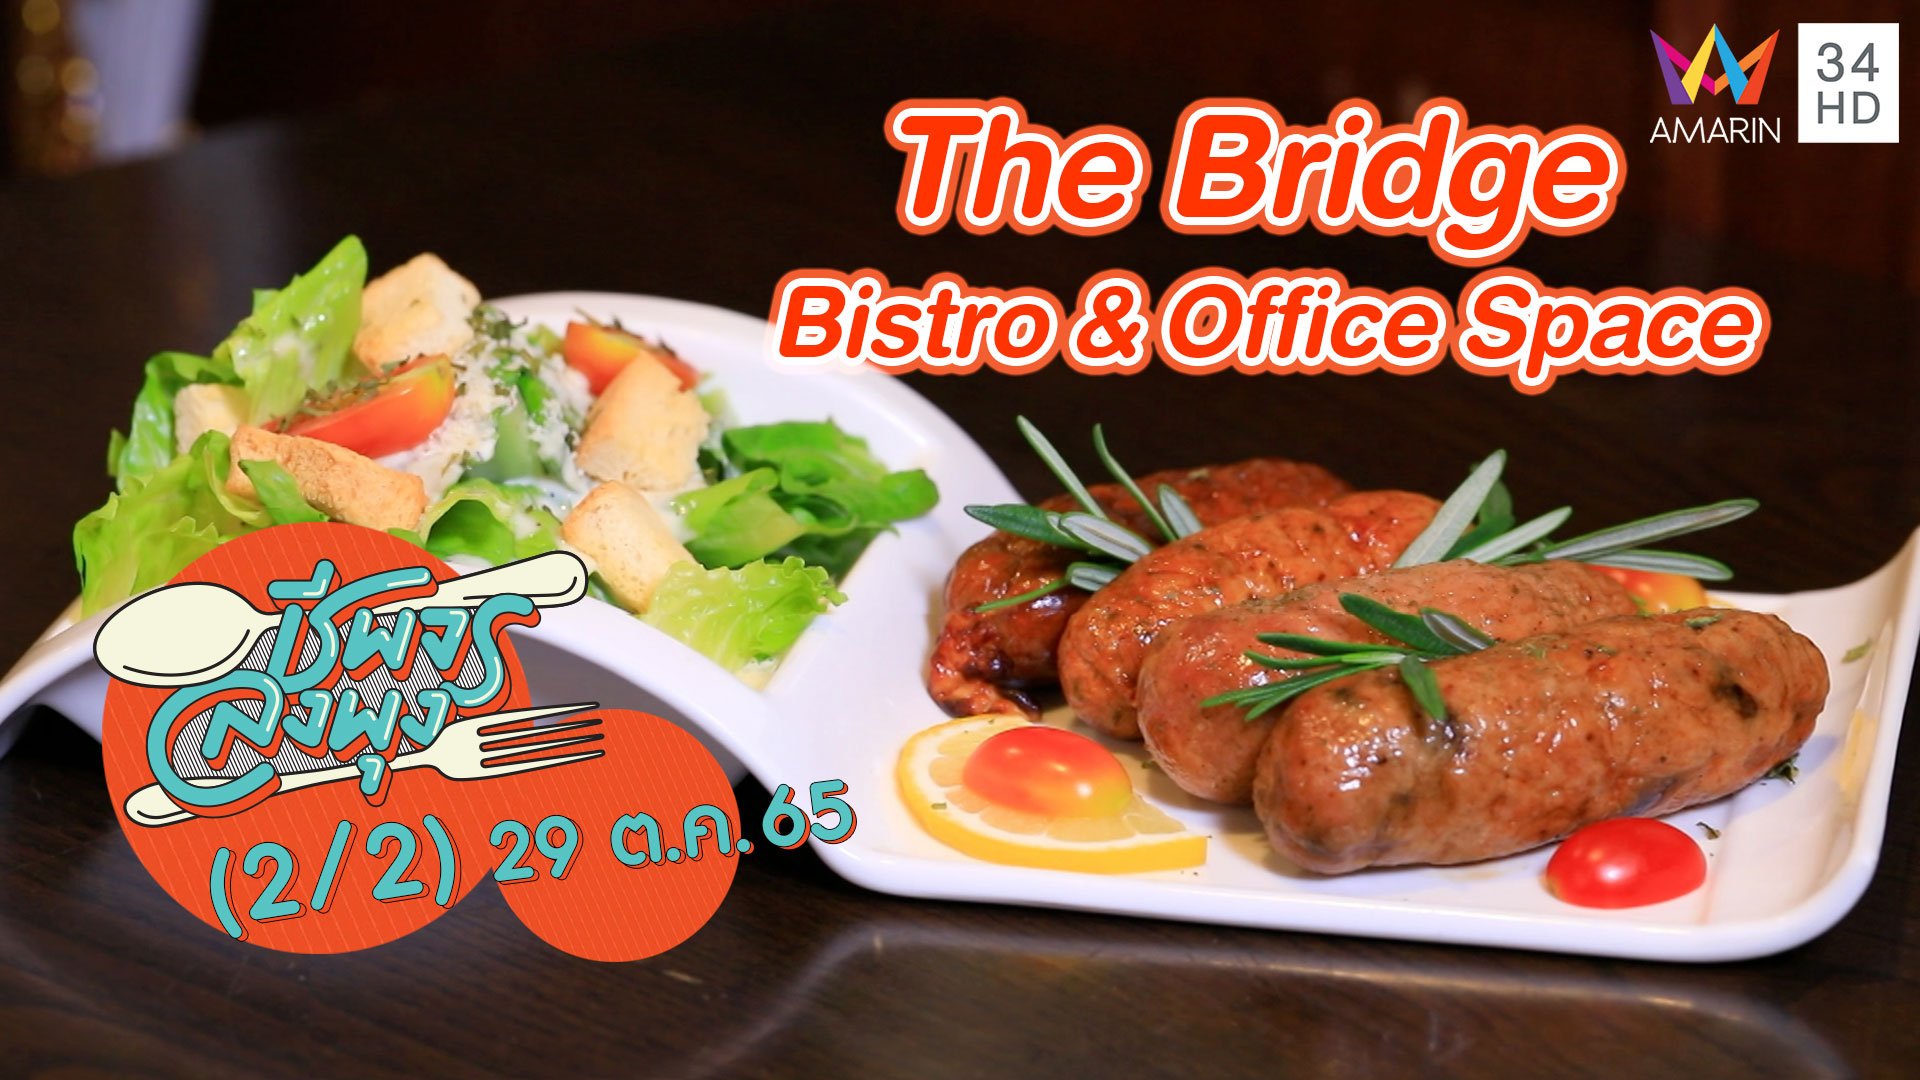 อาหารนานาชาติจานเด็ด @ ร้าน The Bridge Bistro & Office Space | ชีพจรลงพุง | 29 ต.ค. 65 (2/2) | AMARIN TVHD34